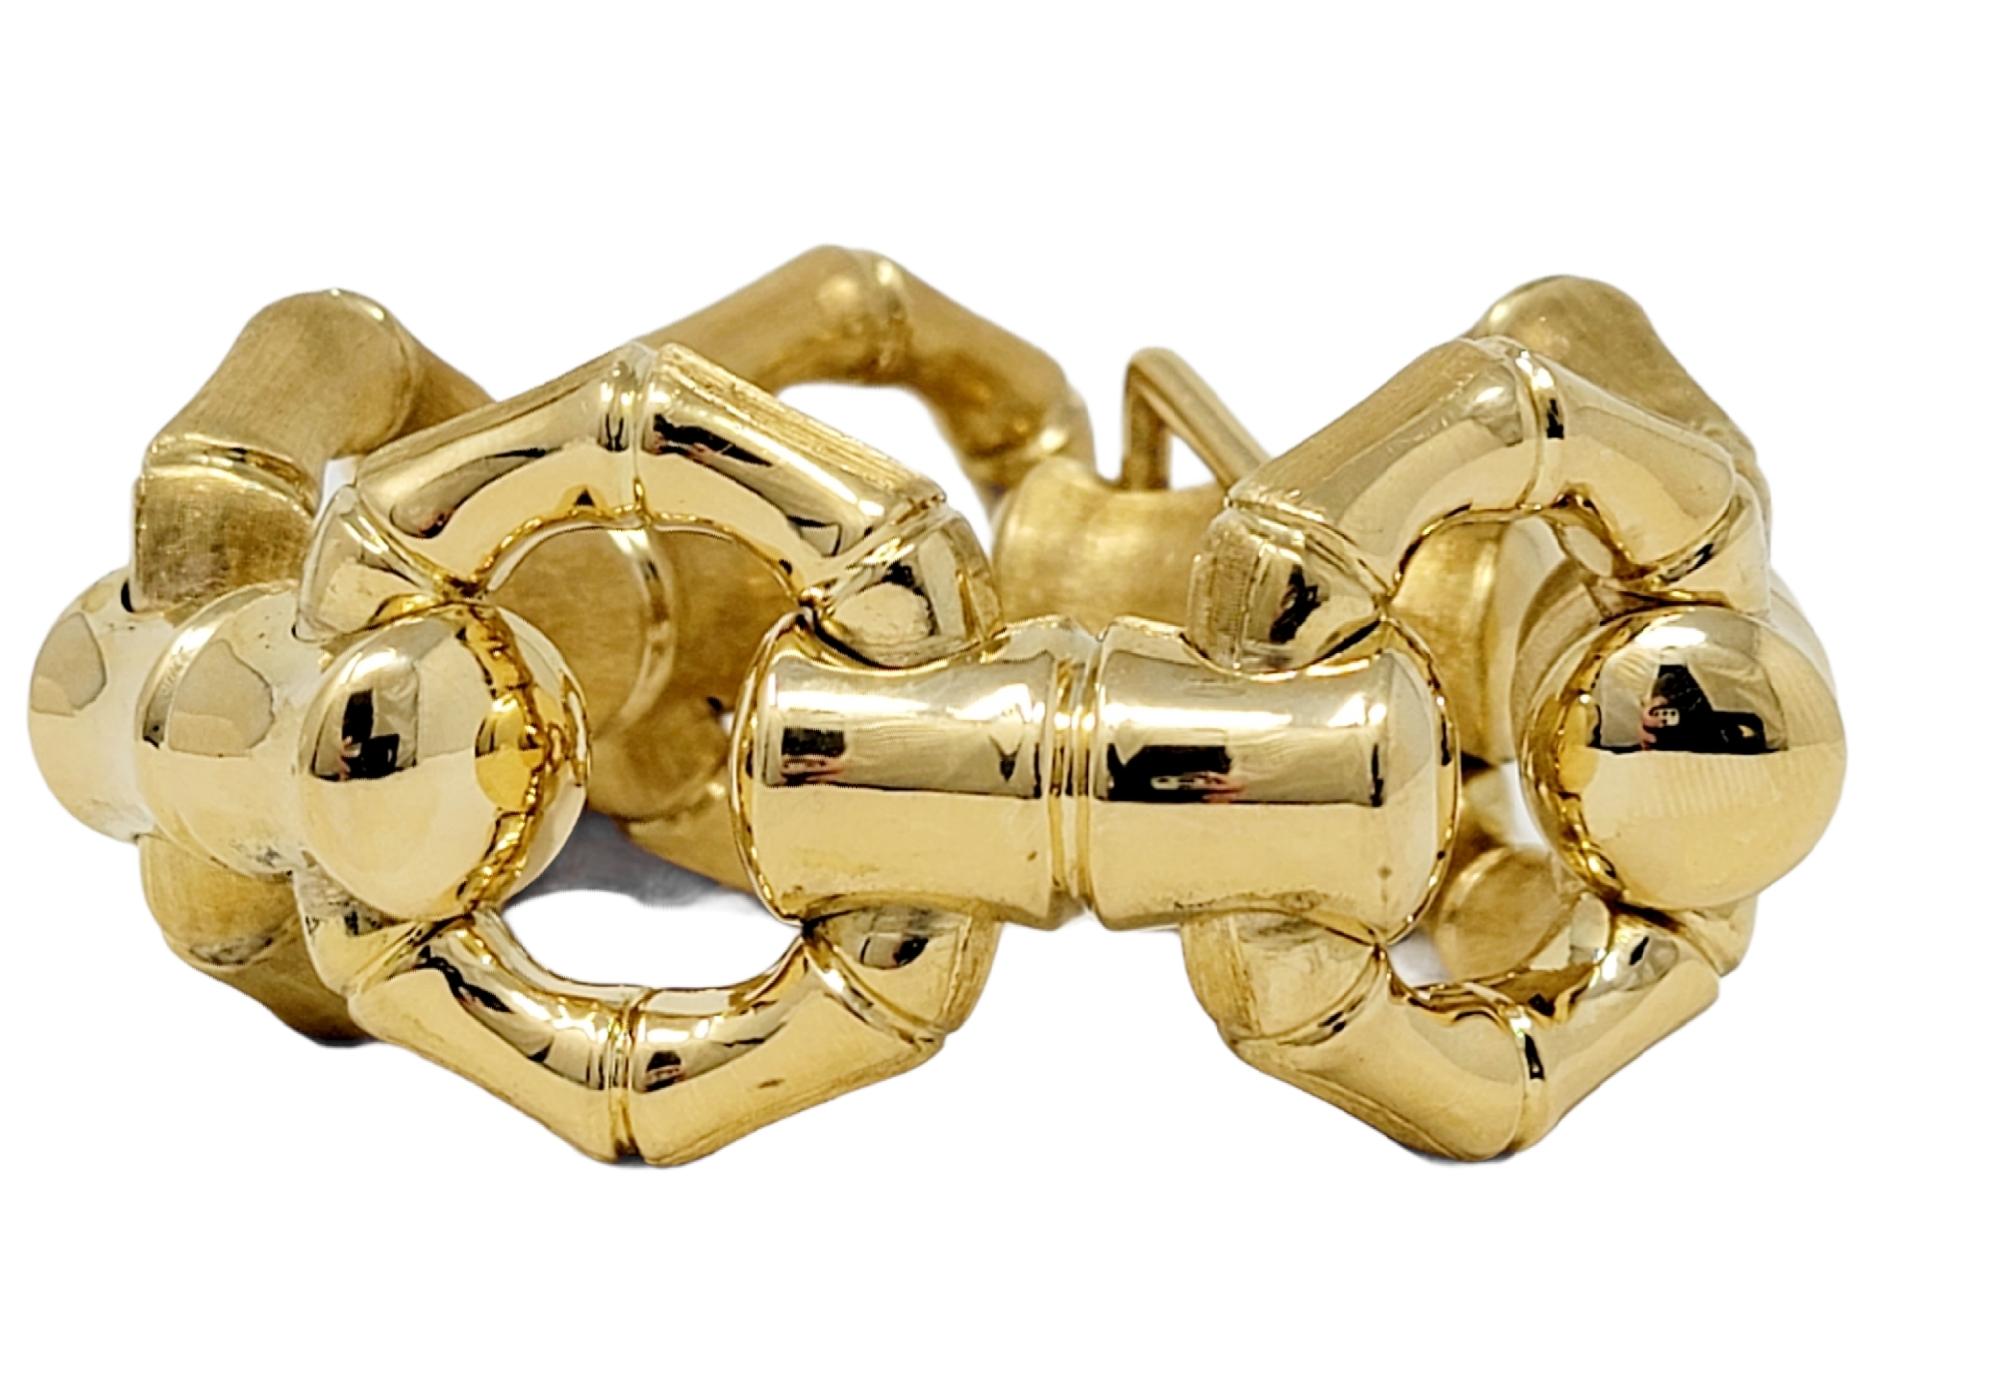 Cet incroyable bracelet à maillons en or jaune 18 carats, avec son style massif et surdimensionné, a été conçu pour faire sensation ! Doté d'un design réversible en maillons de bambou, ce bracelet de grande taille peut être porté de deux façons pour